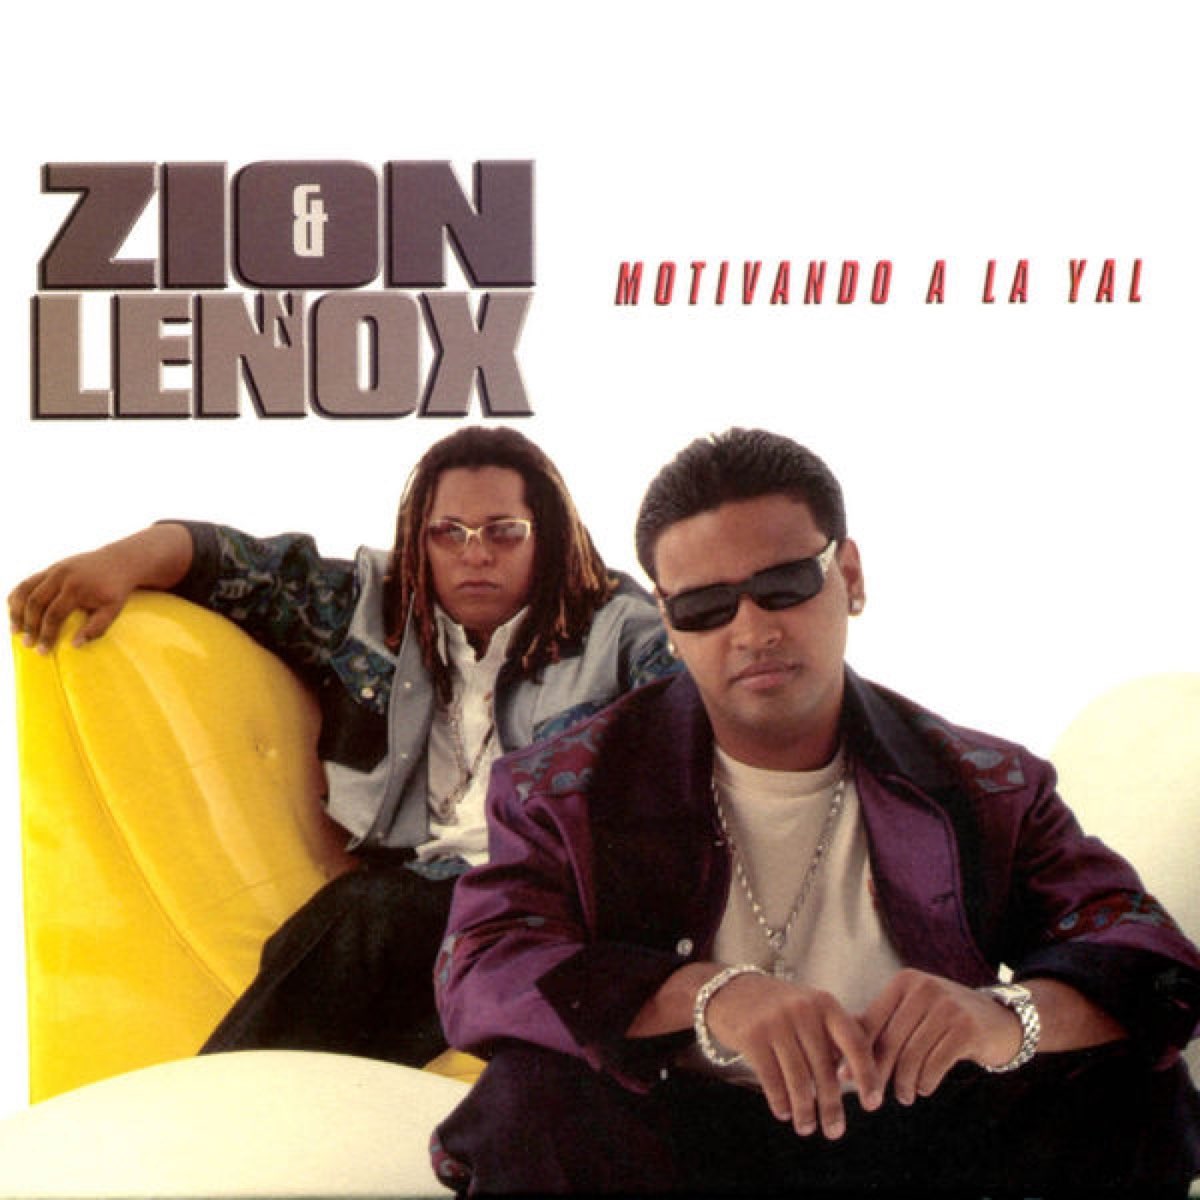 Daddy yankee yo. Zion & Lennox. Motivando a la Yal Zion y Lennox. Zion y Lennox песни. Lennox певец латиноамериканский.